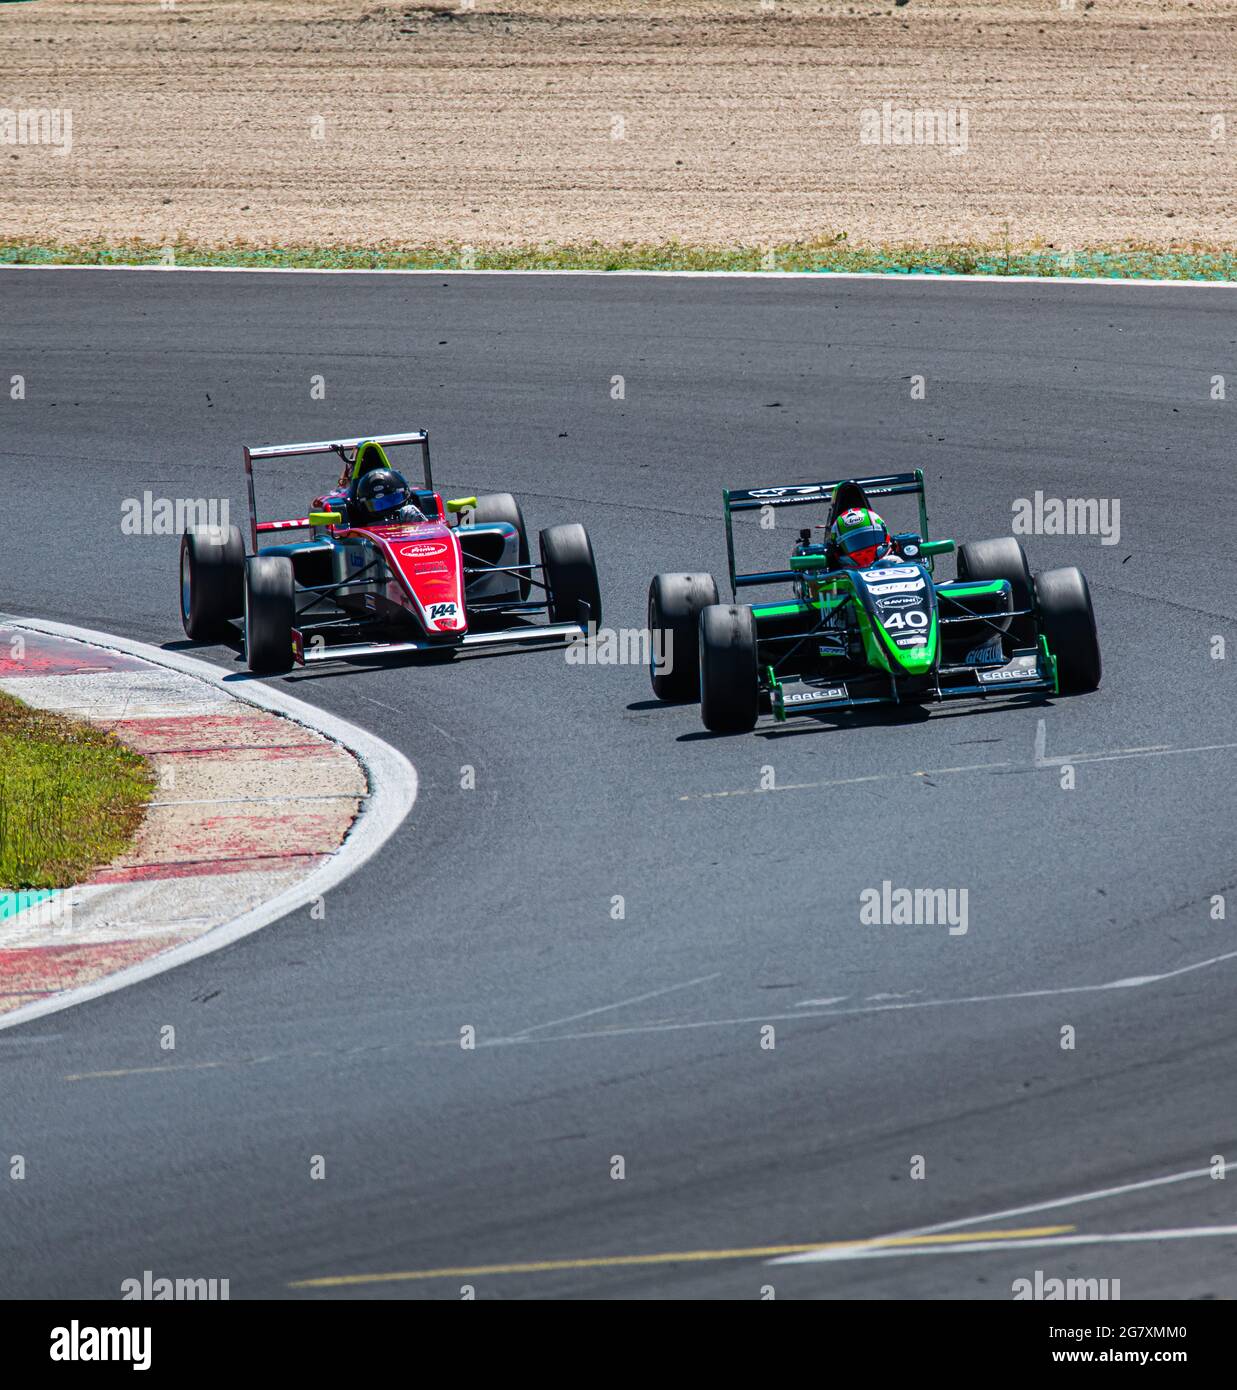 Einige Formel-Autos kämpfen und versuchen, beim Turn zu überholen, was während des Rennens eine Herausforderung darstellt Stockfoto